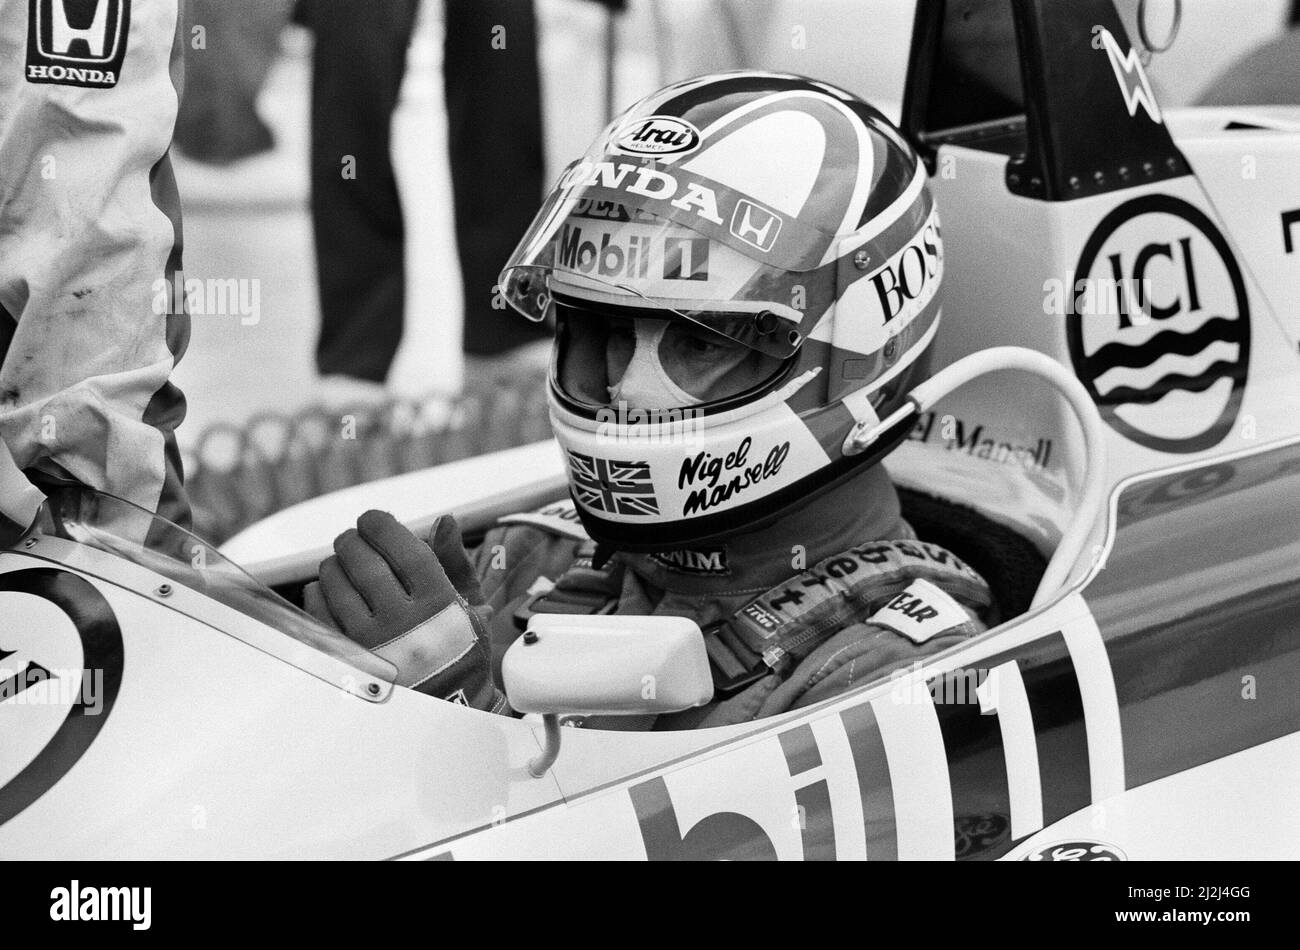 Championnat du monde de Formule 1 du Grand Prix de Grande-Bretagne à Silverstone. Nigel Mansell, pilote Williams, que l'on voit ici célébrer sur le podium après avoir remporté la course. 12th juillet 1987. Banque D'Images